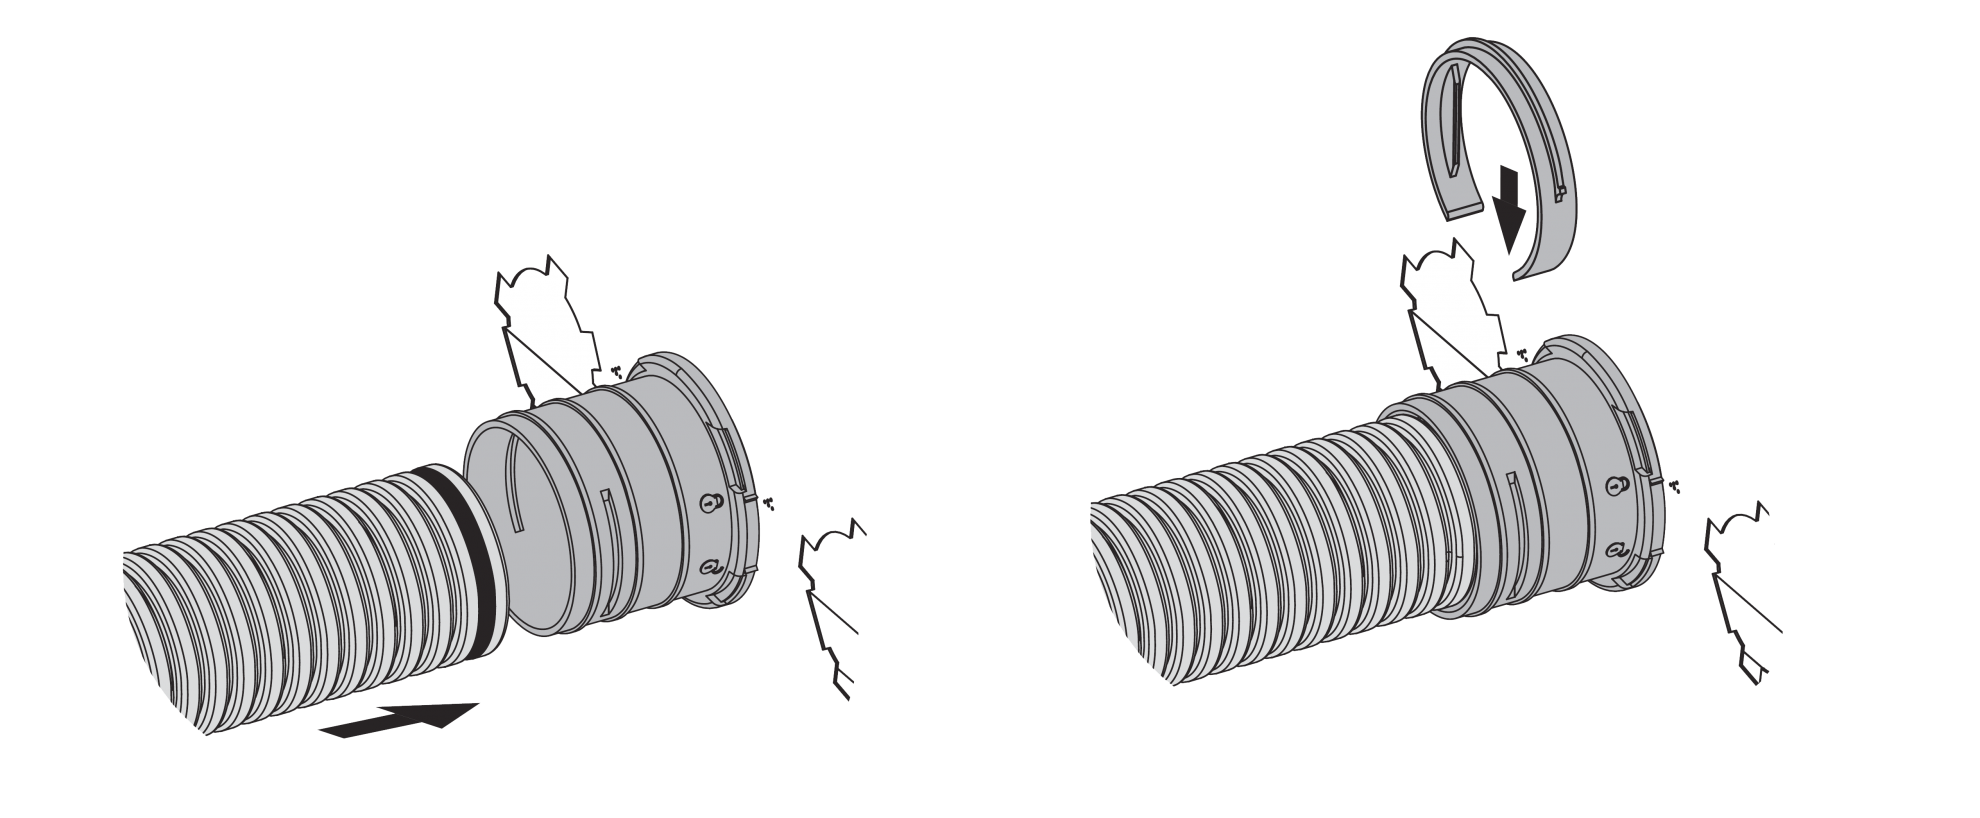 PIerścień zabezpieczający wykorzystuje się również przy łączeniu elastycznych kanałów systemu Dalap Flexitech z pozostałymi komponentami, takimi jak skrzynki rozdzielające czy adaptery do rozdzielania systemu wentylacyjnego.